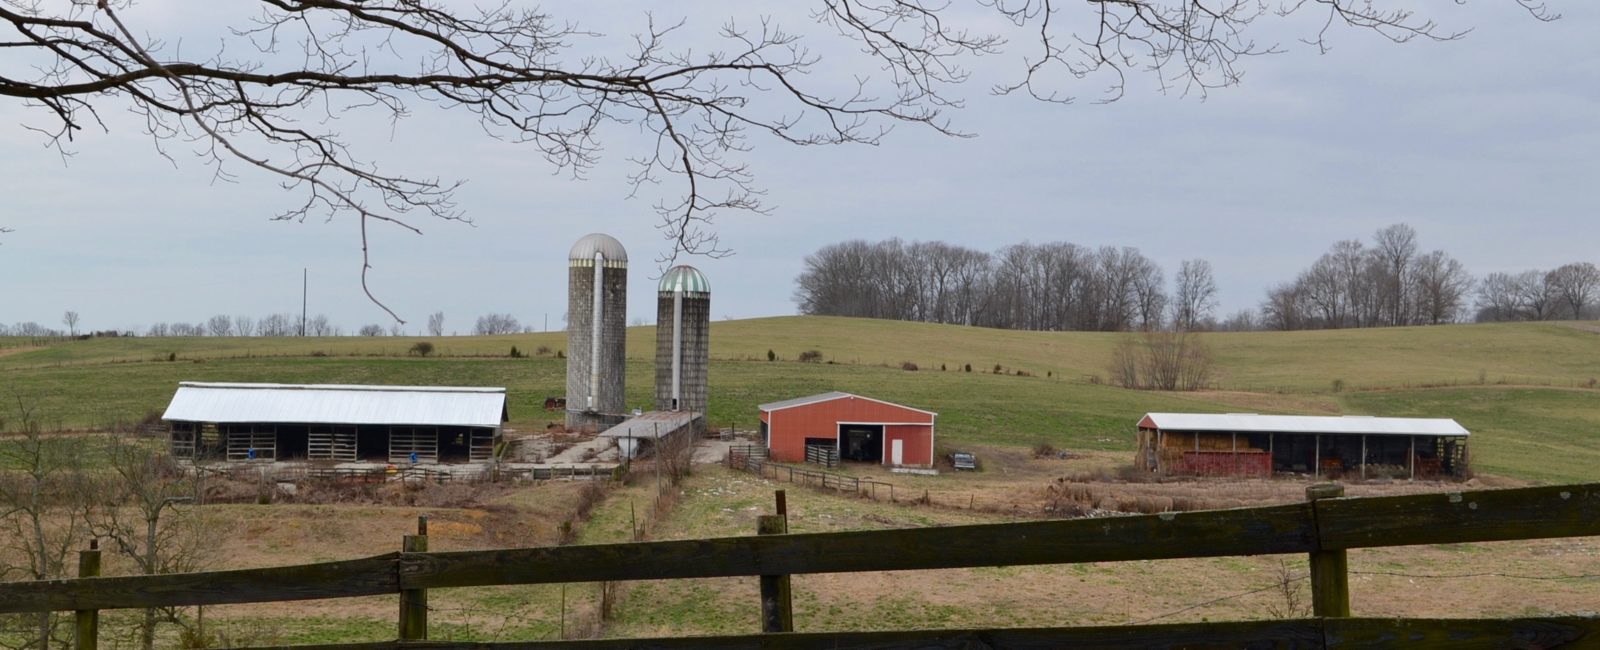 Scenic view of Farm